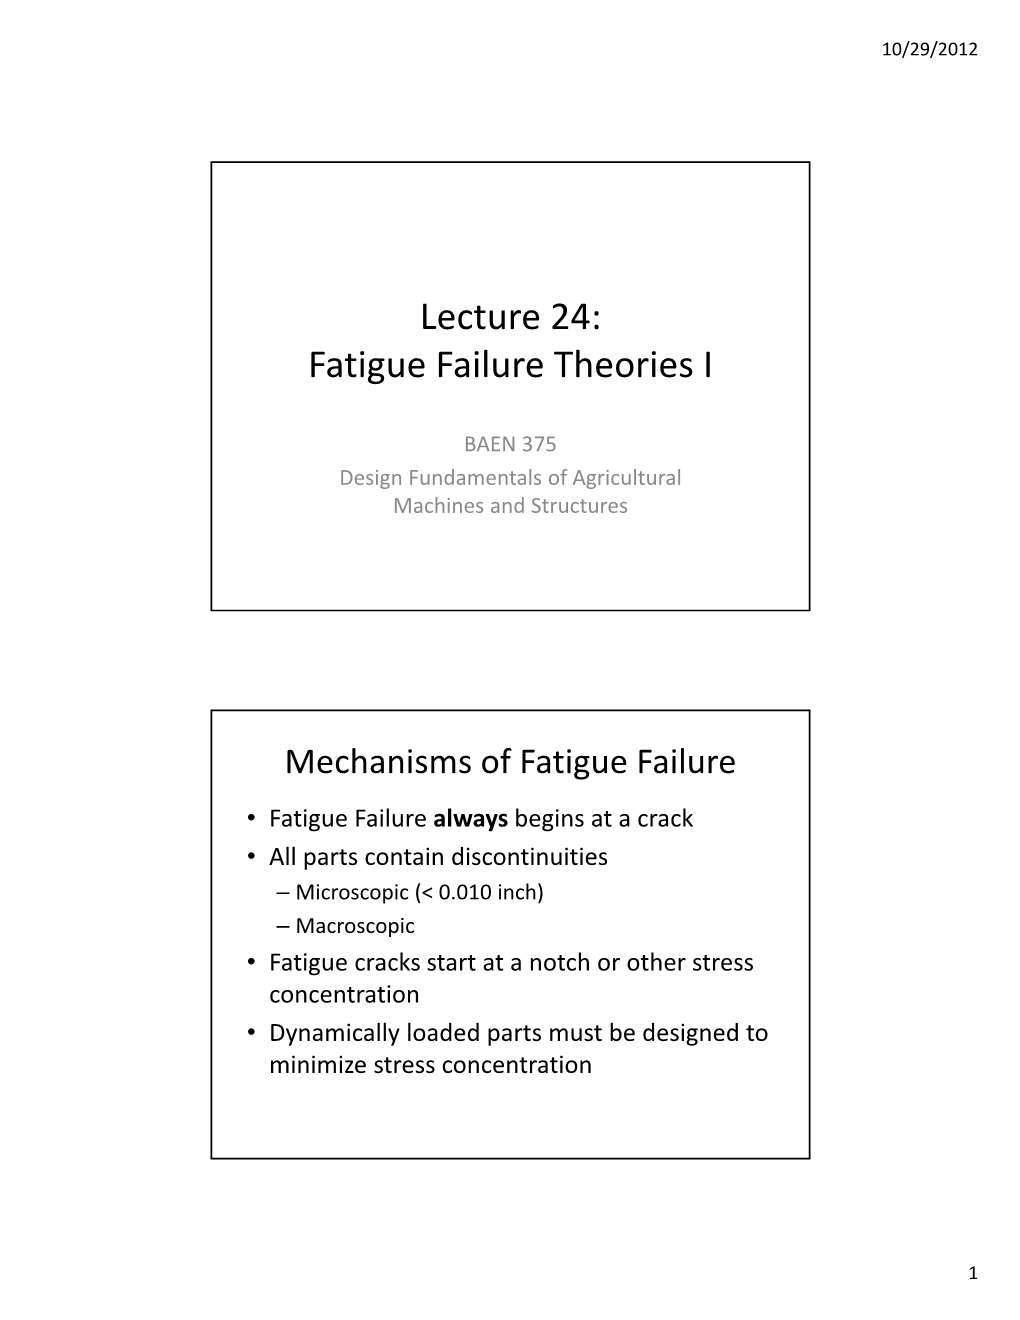 Fatigue Failure Theories I